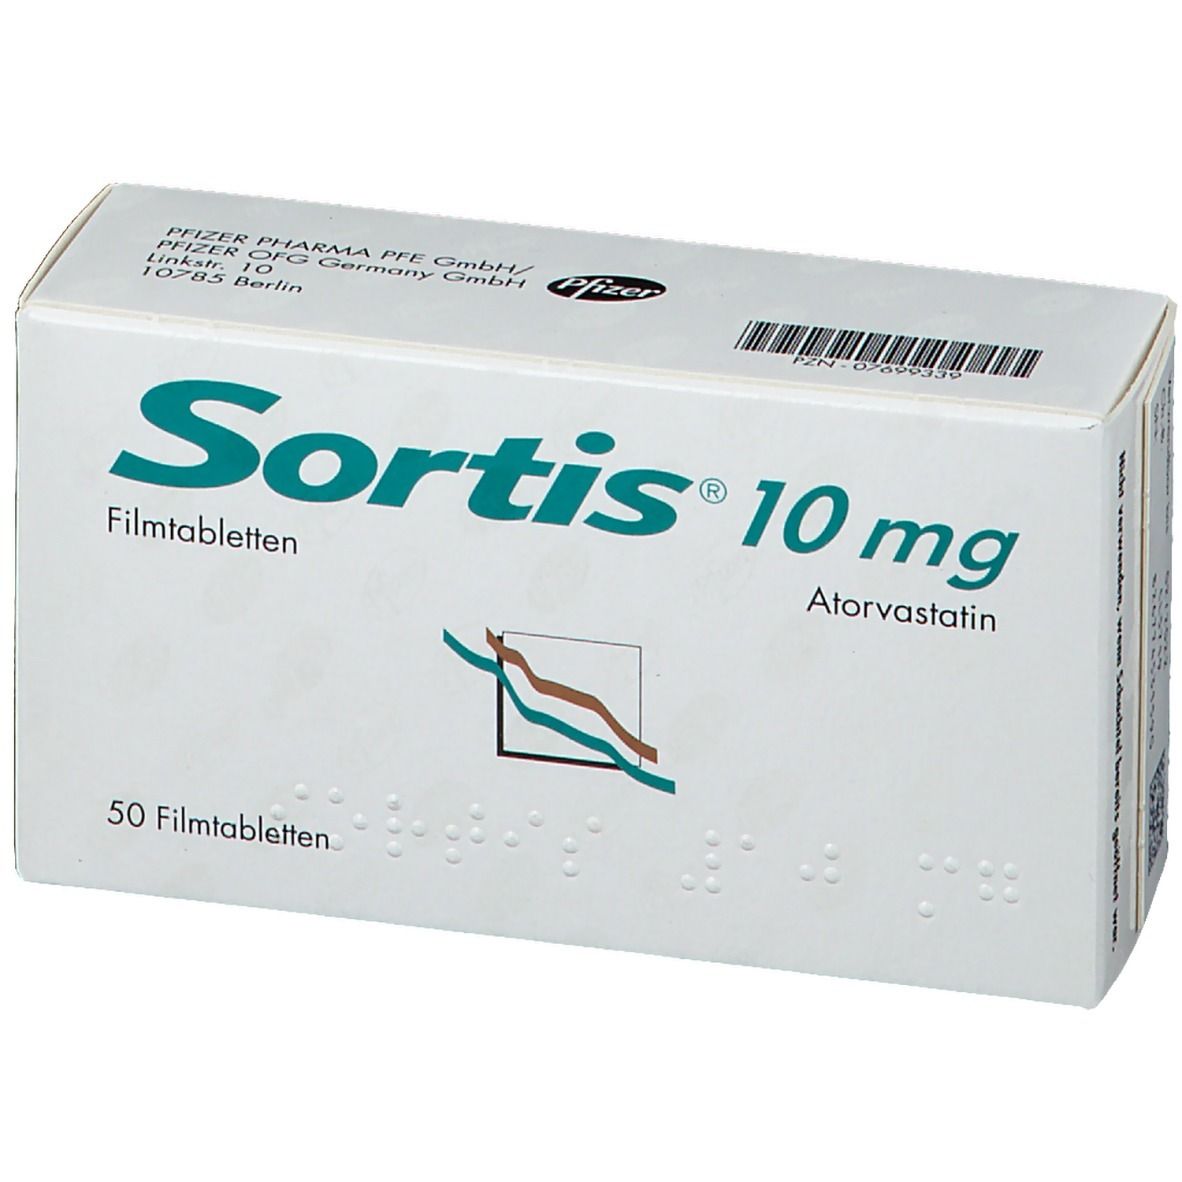 Sortis® 10 mg